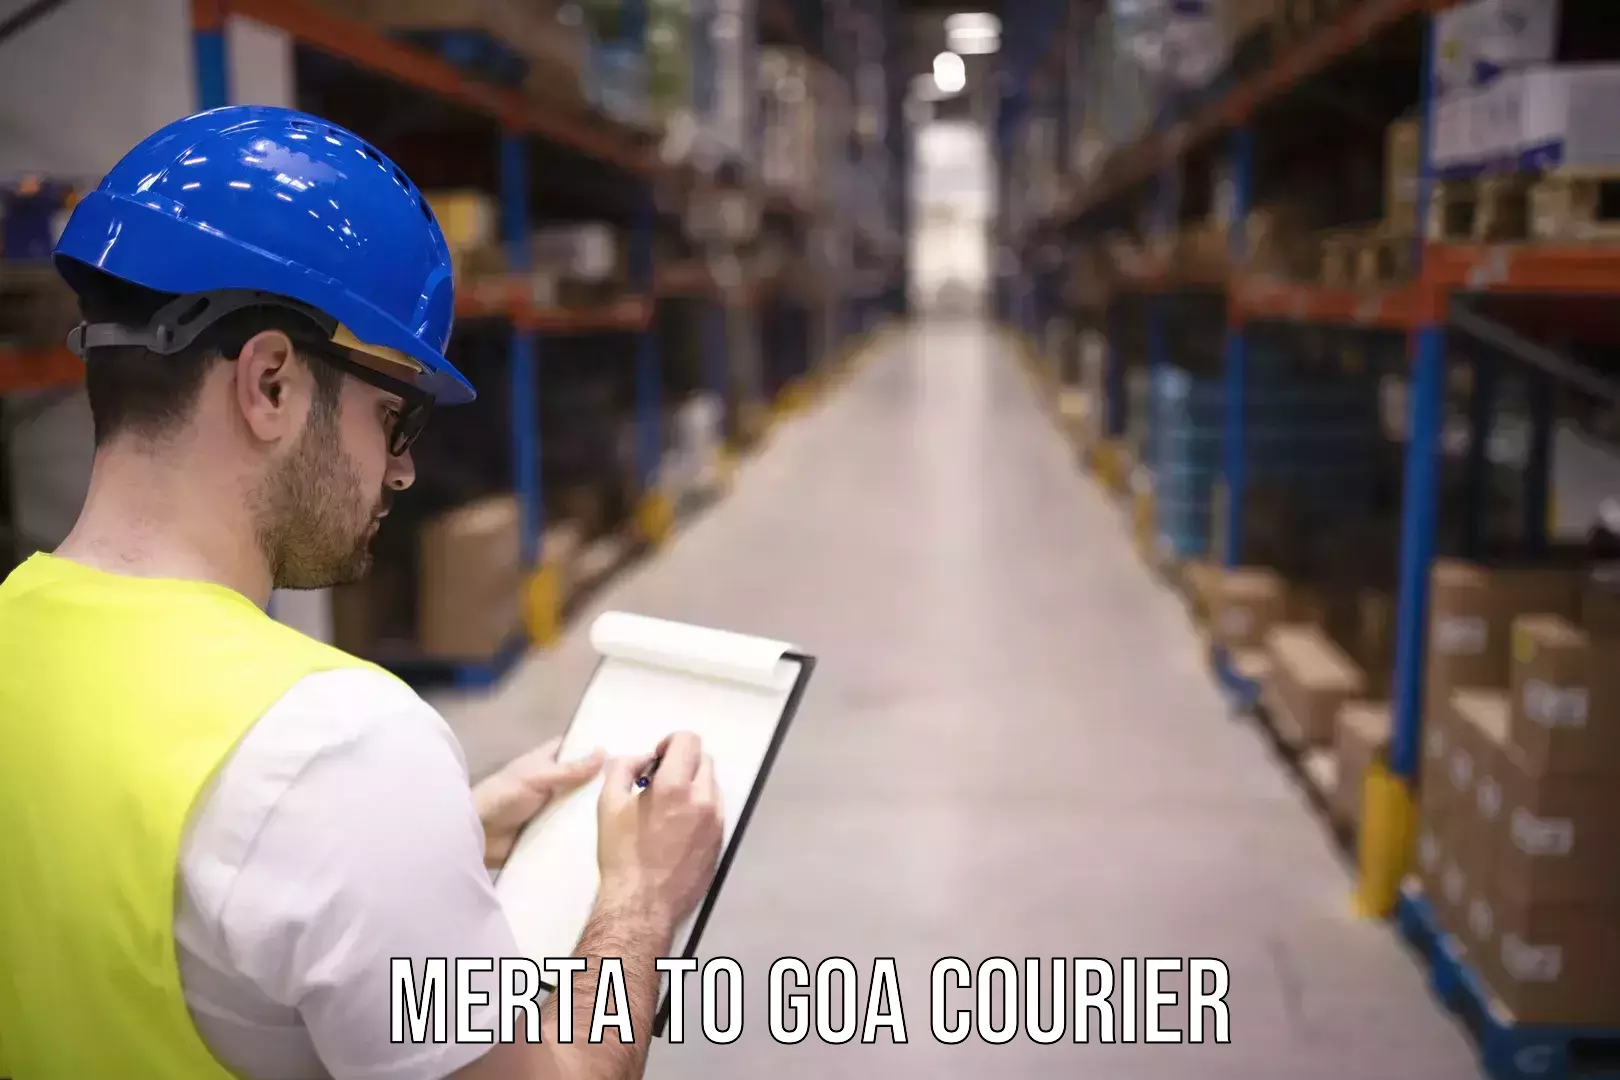 Digital courier platforms Merta to Ponda